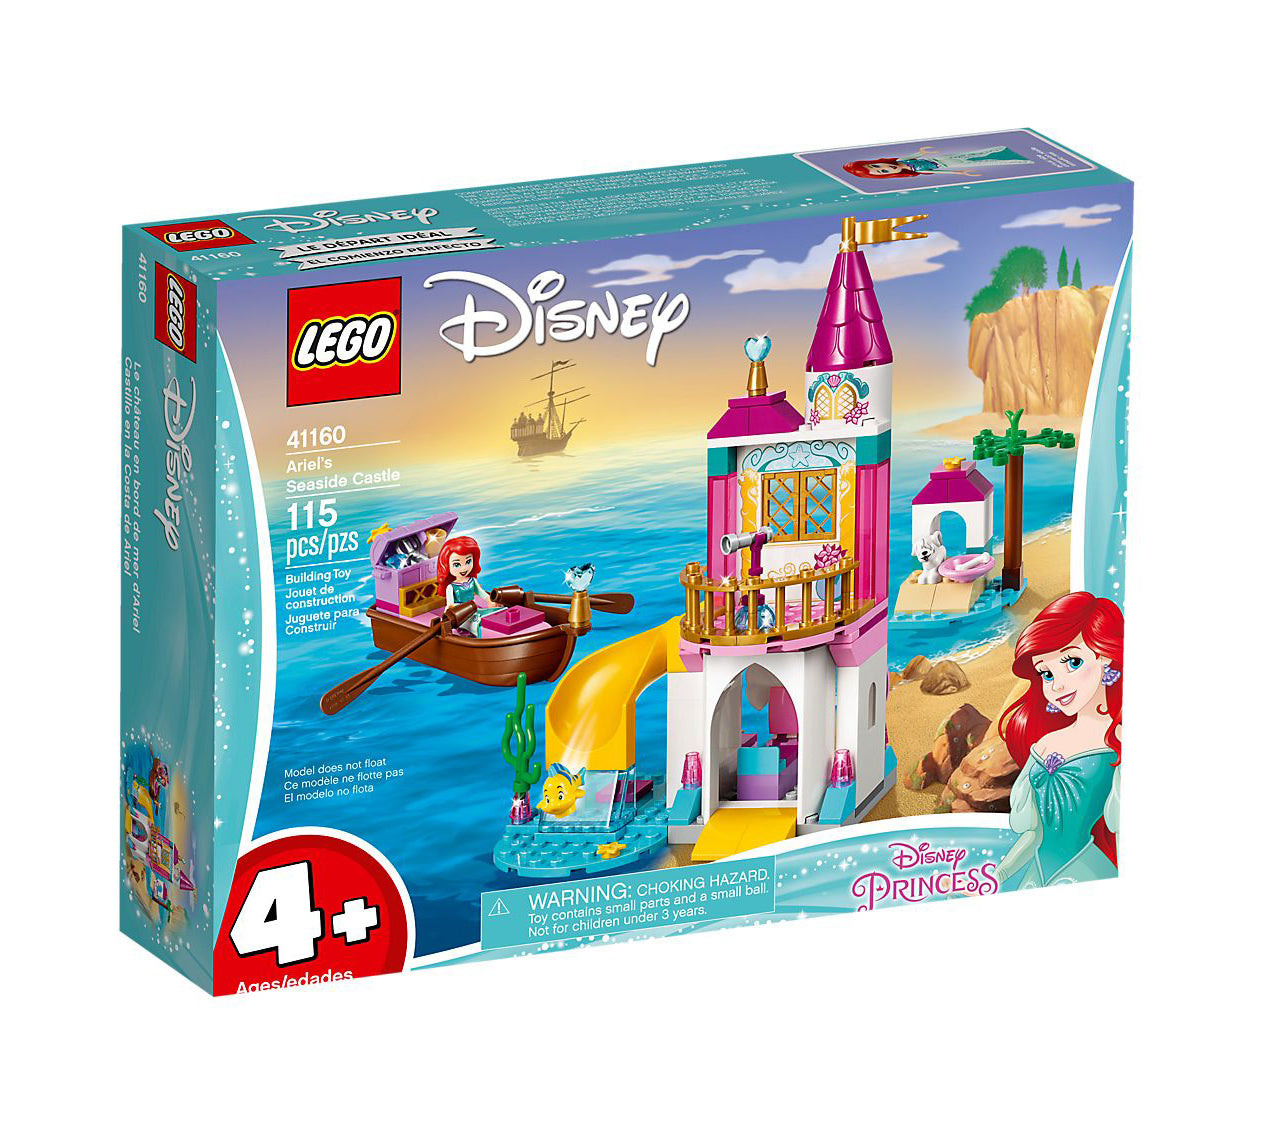 Lego Disney Princess Ariel's Seaside Castle 41160